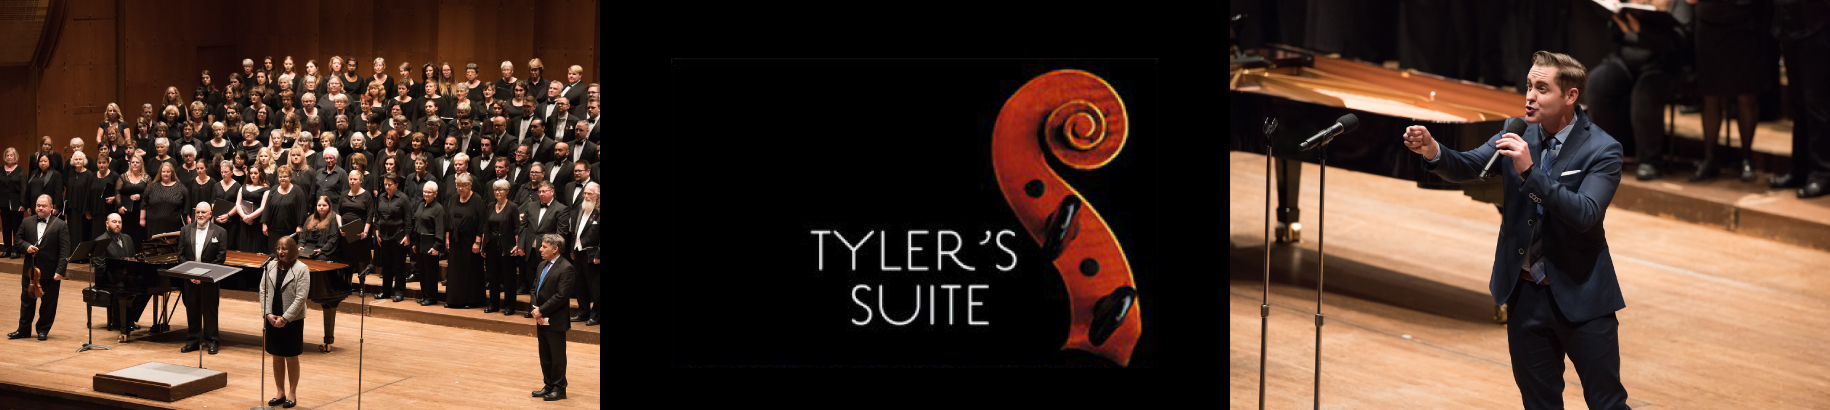 Tyler’s Suite